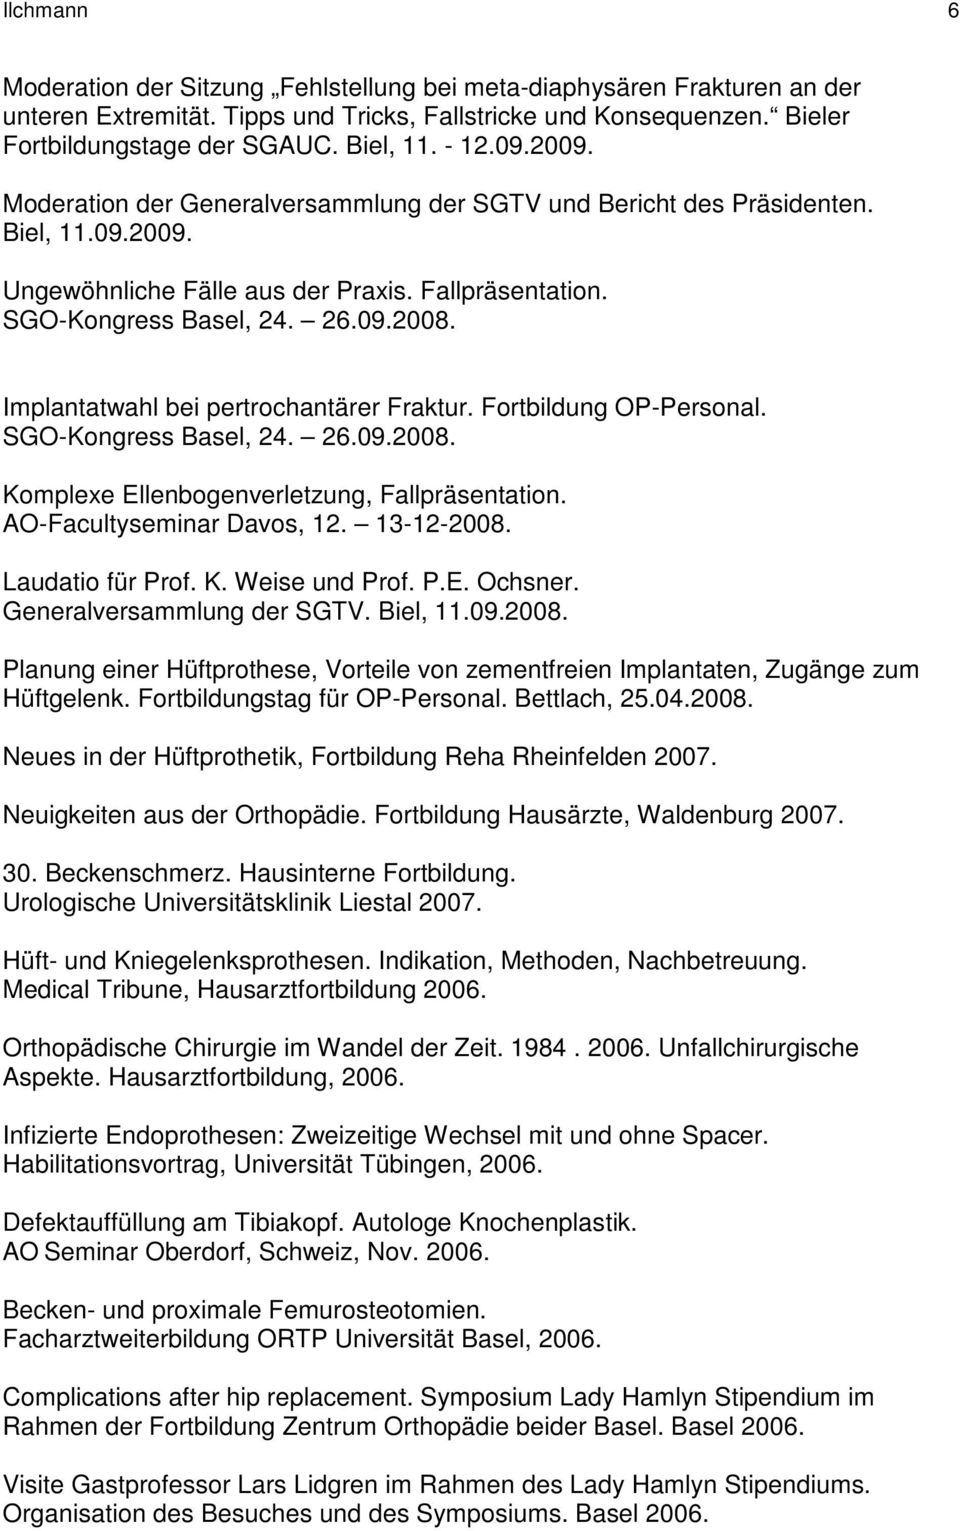 Implantatwahl bei pertrochantärer Fraktur. Fortbildung OP-Personal. SGO-Kongress Basel, 24. 26.09.2008. Komplexe Ellenbogenverletzung, Fallpräsentation. AO-Facultyseminar Davos, 12. 13-12-2008.